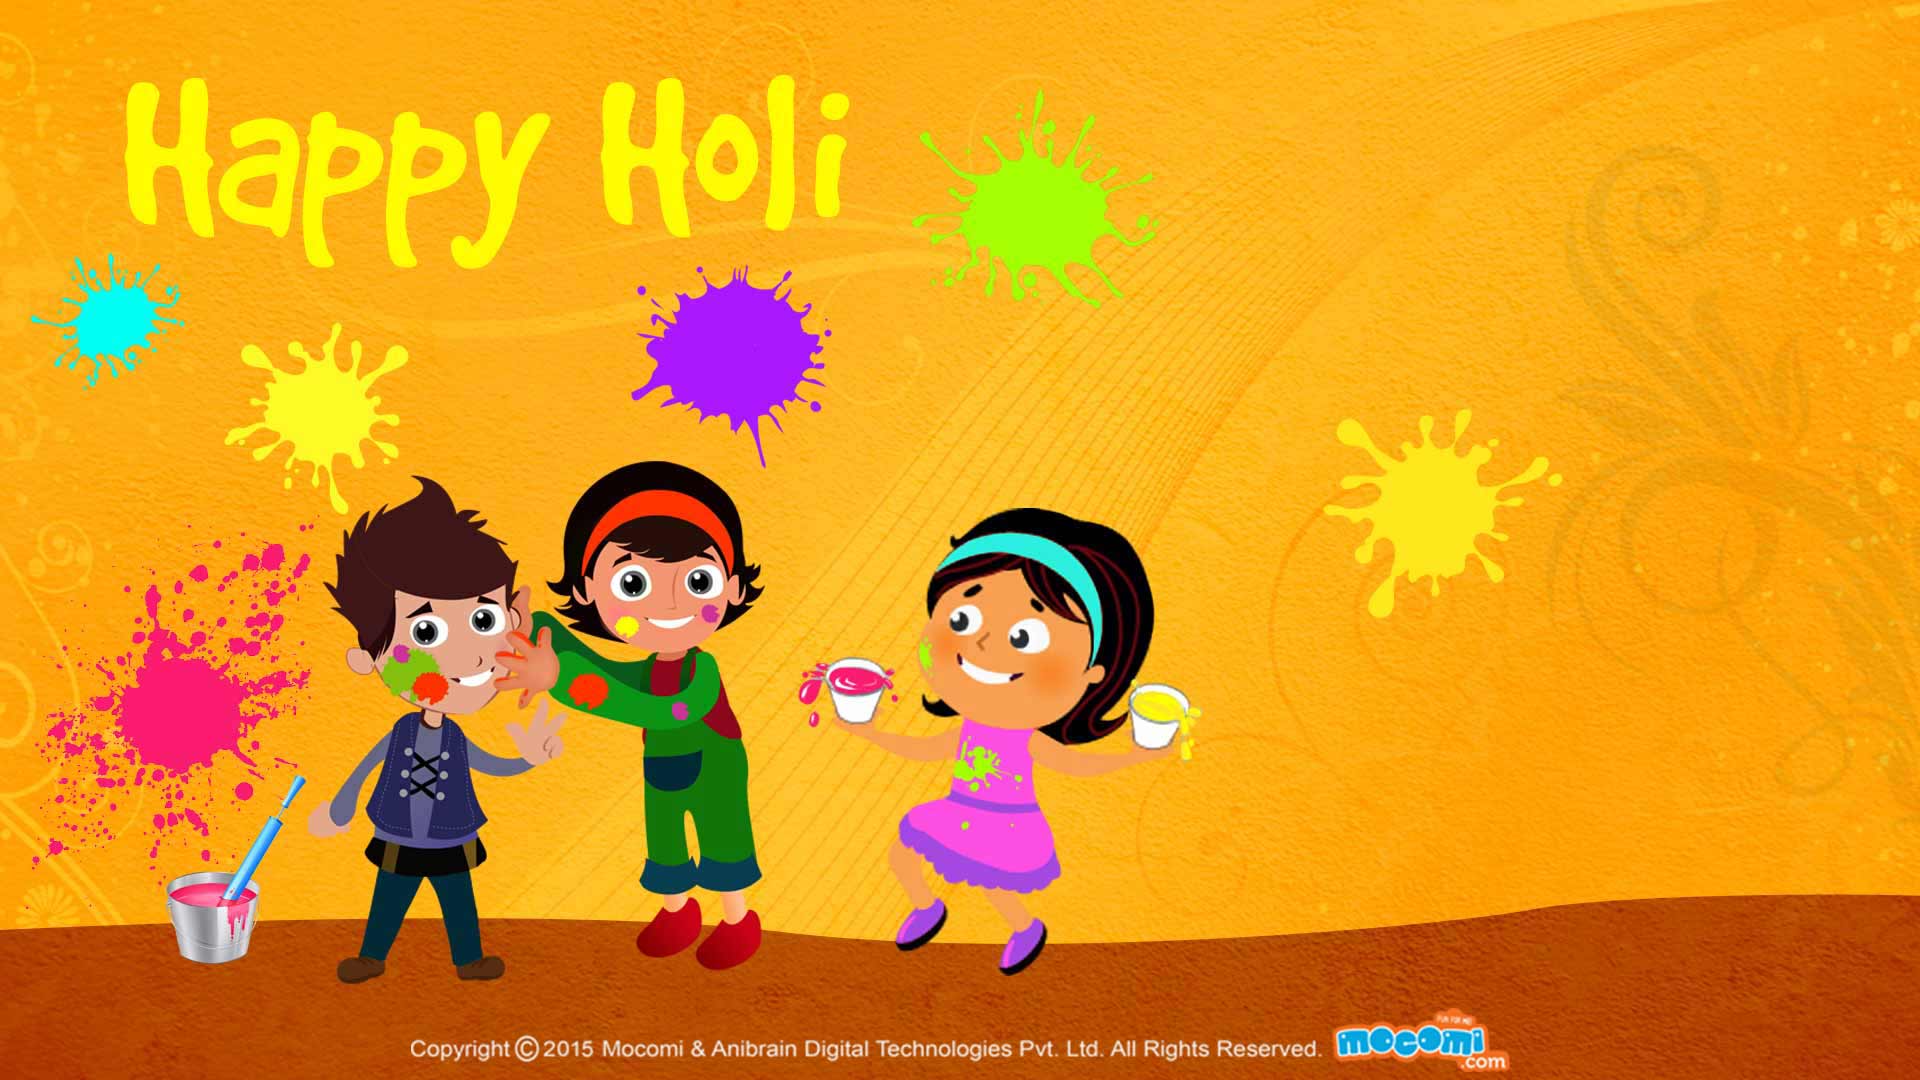 Happy Holi Wallpaper for kids